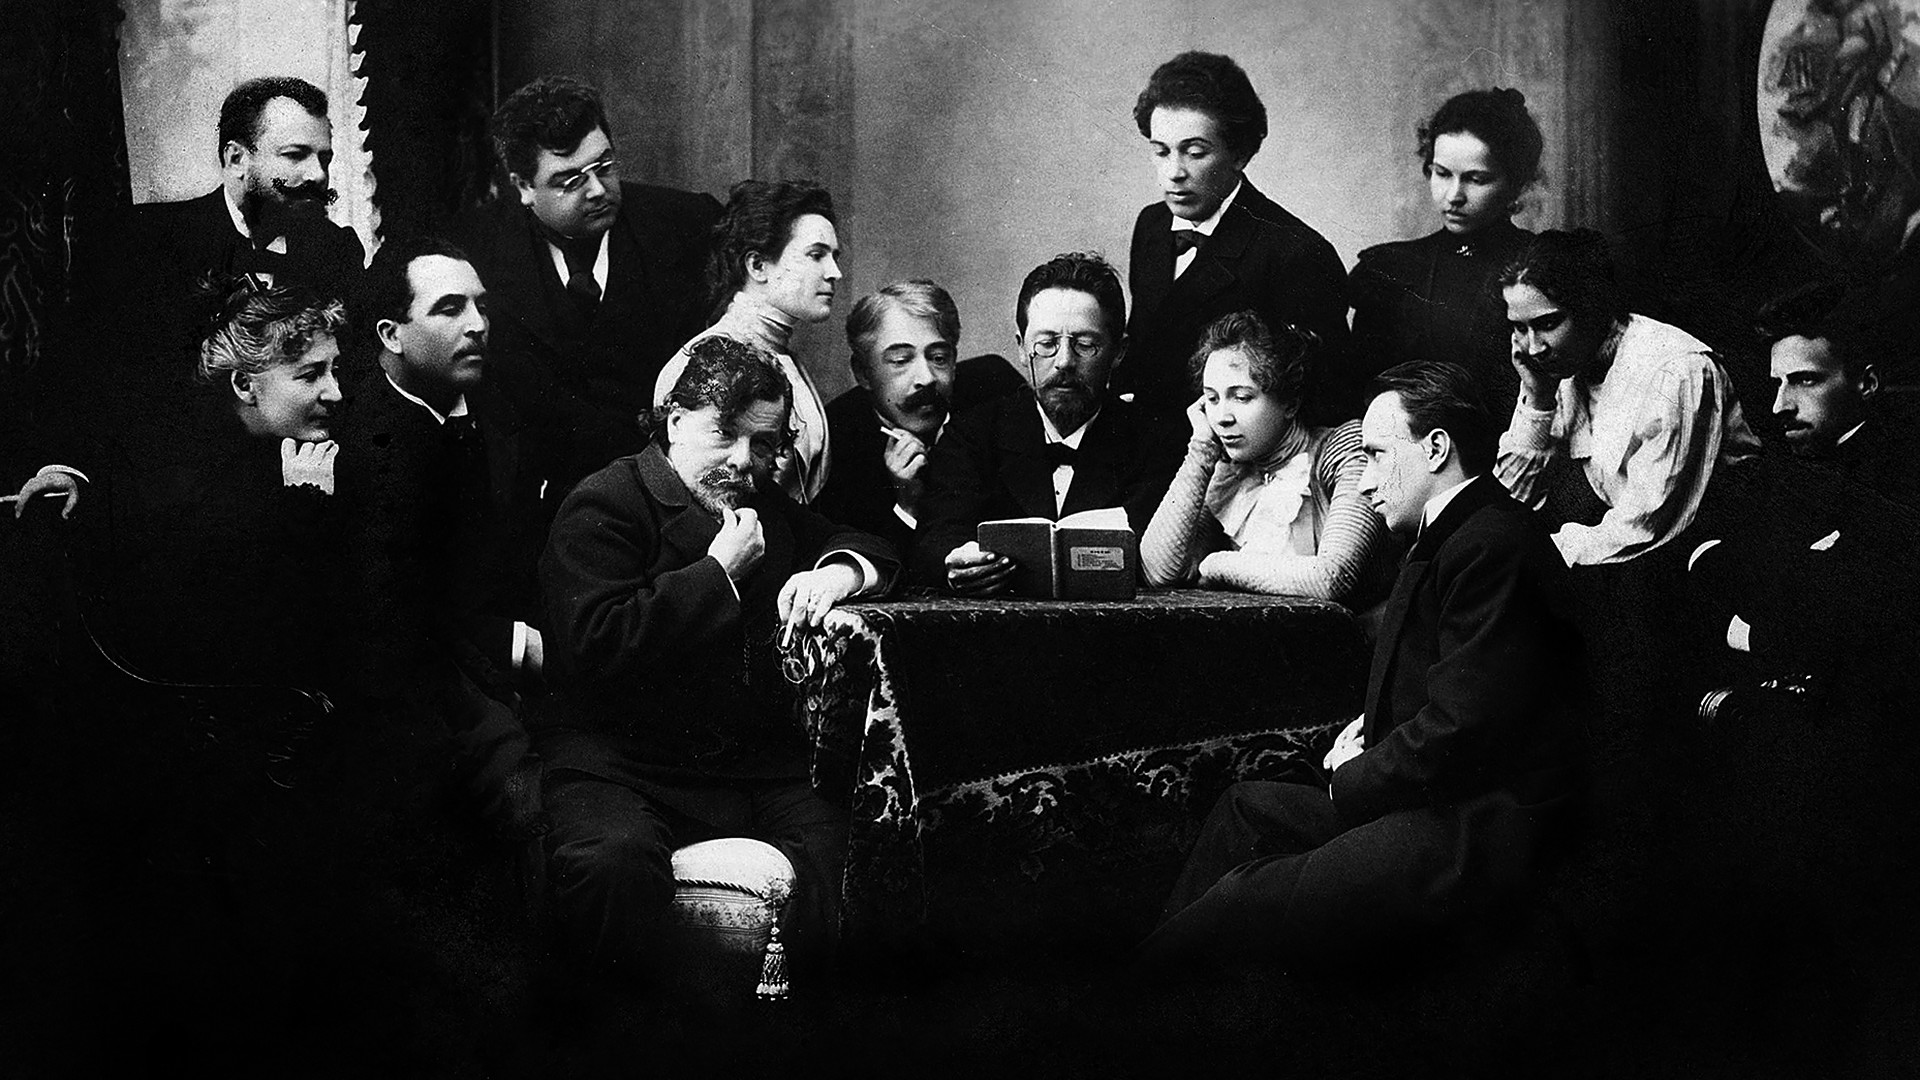 Chéjov y los actores del Teatro de Arte de Moscú: Konstantín Stanislavski (a la izq. de Chékhov), Olga Knipper (a la izq. de Stanislavski), Vsévolod Meyerhold (a la der.), Vladímir Nemiróvich Danchenko (de pie a la izq. de Chéjov) y otros.